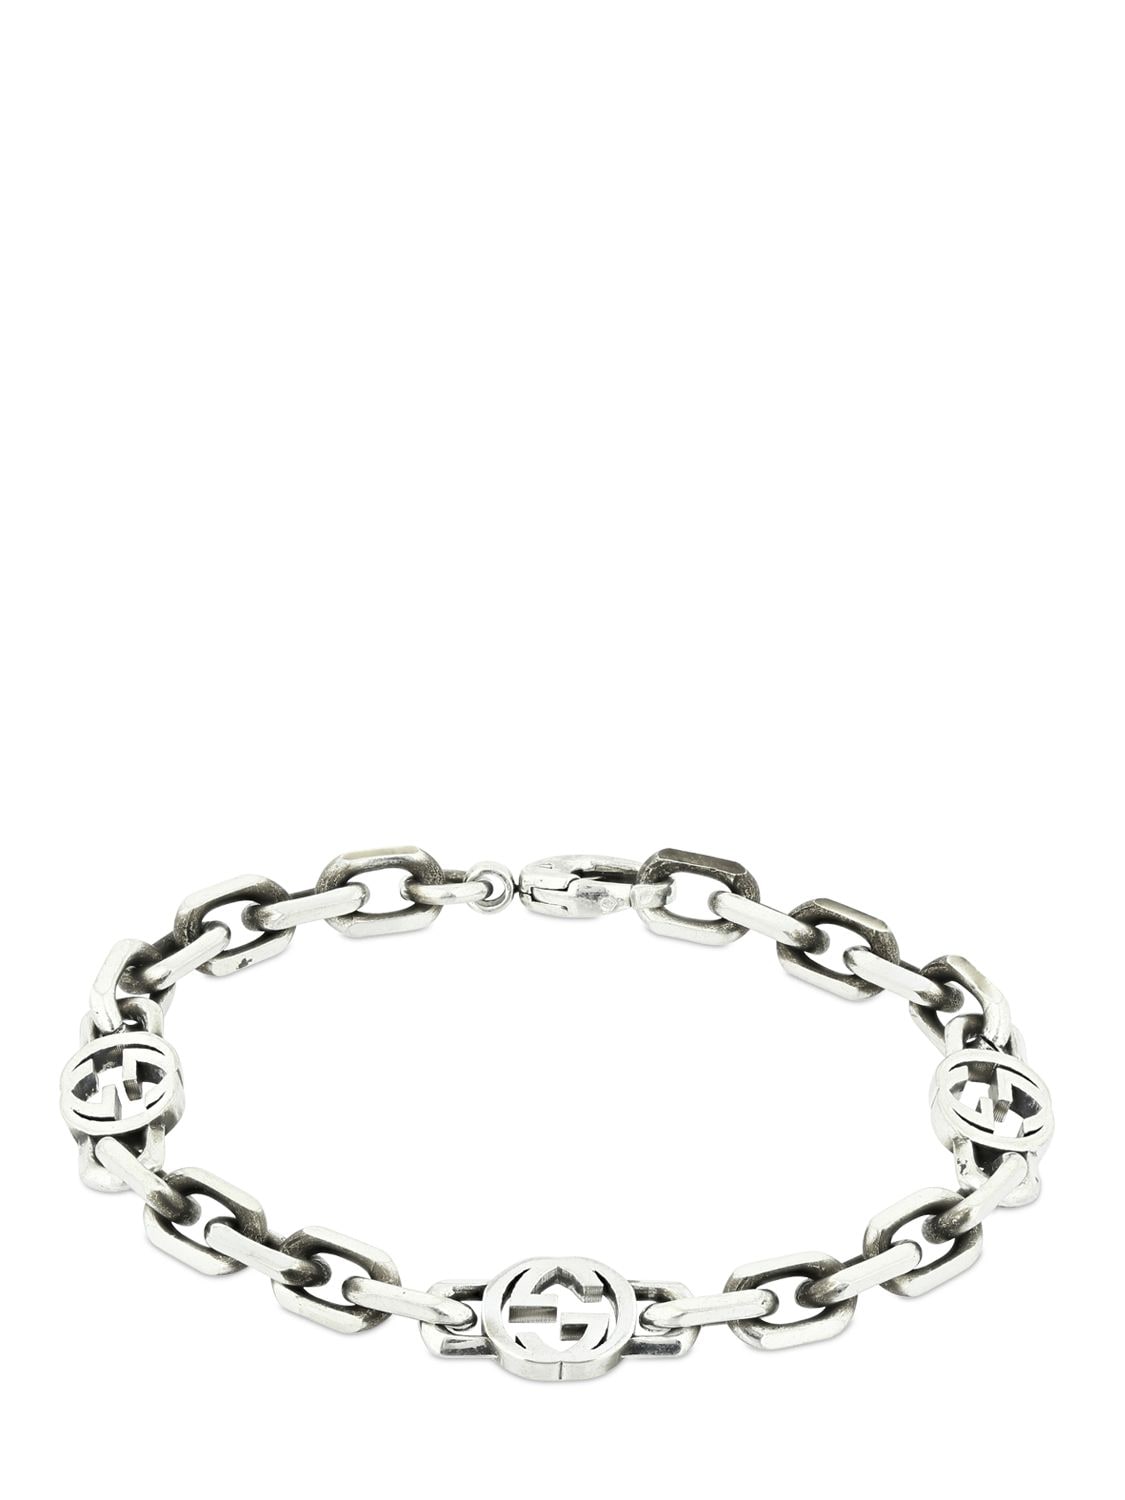 Gucci Interlocking G Chain Bracelet